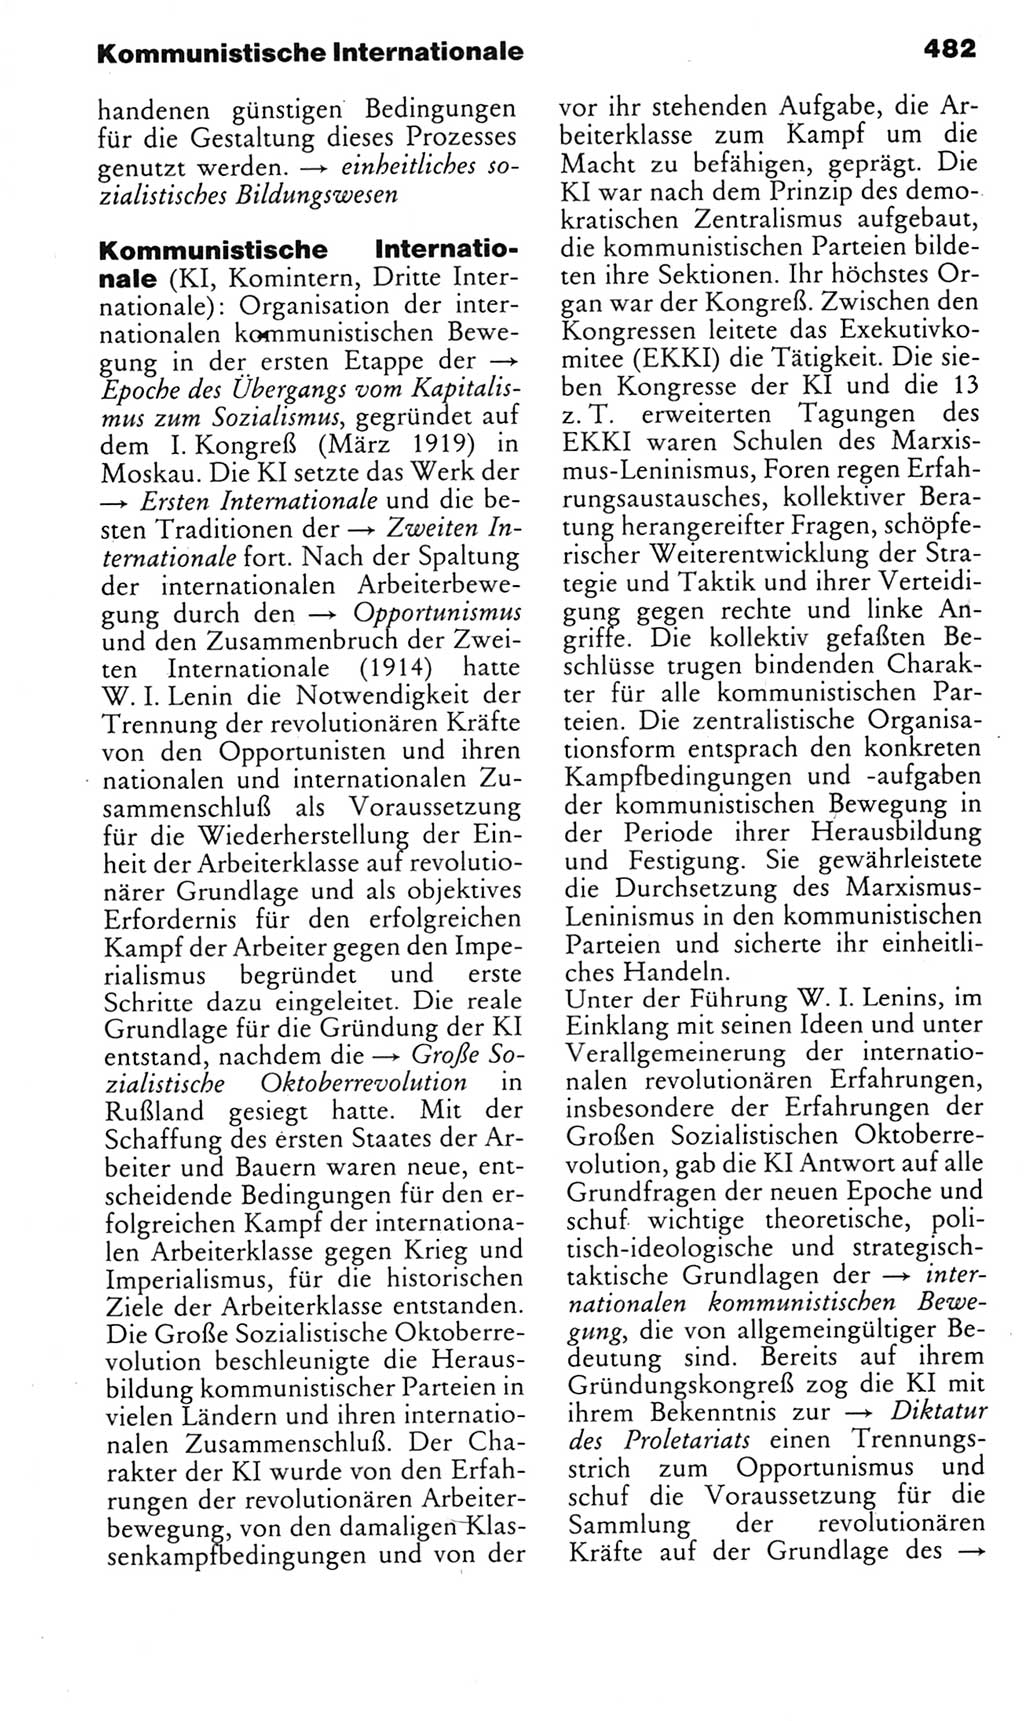 Kleines politisches Wörterbuch [Deutsche Demokratische Republik (DDR)] 1985, Seite 482 (Kl. pol. Wb. DDR 1985, S. 482)